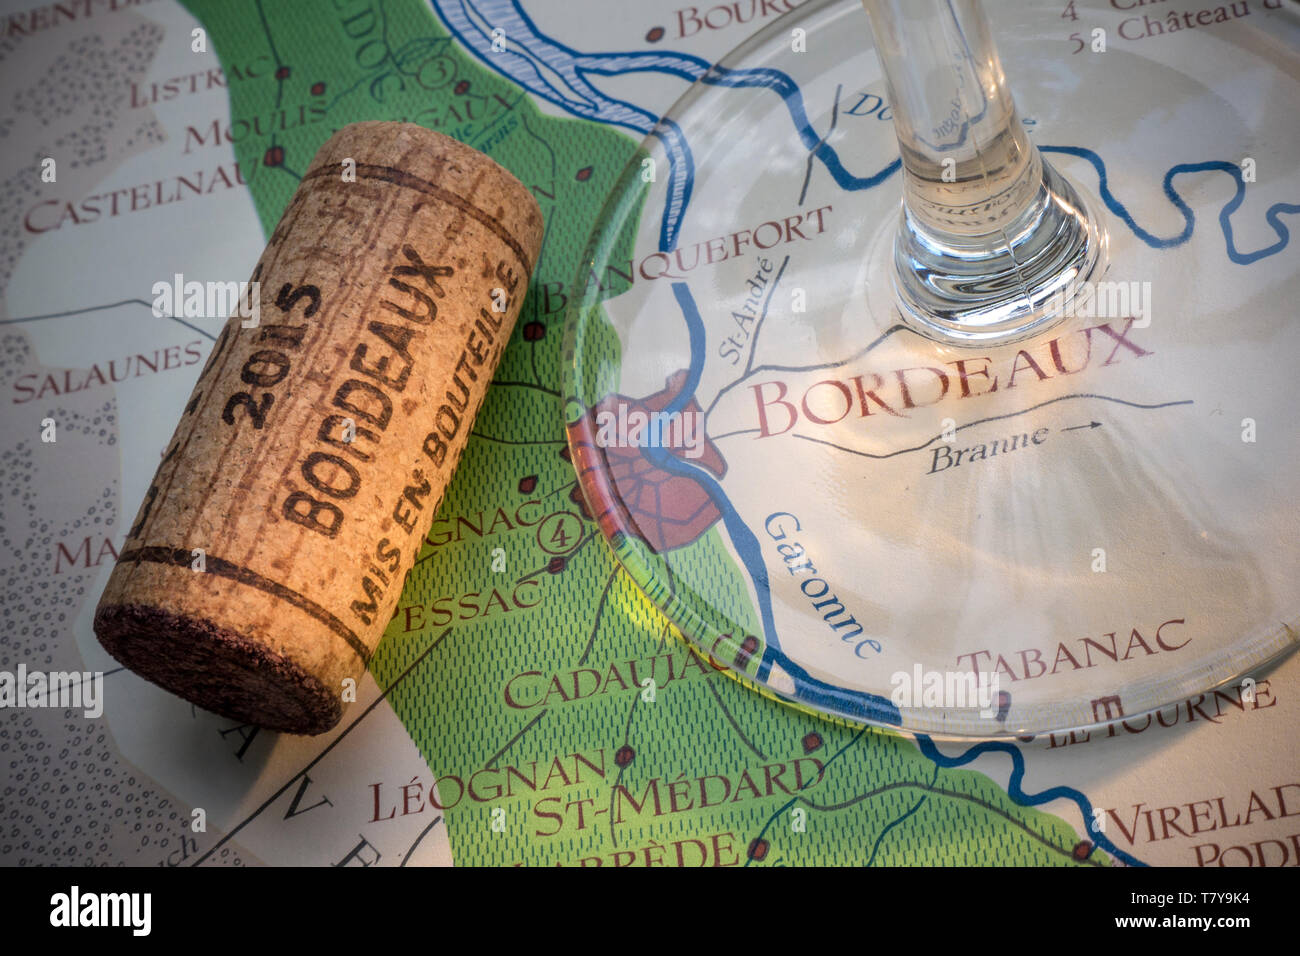 Bordeaux wine tour français concept dégustation, avec tige de verre de vin, vintage année 2015 Bordeaux cork en close up, sur la vieille carte des régions des vins de Bordeaux historique Banque D'Images